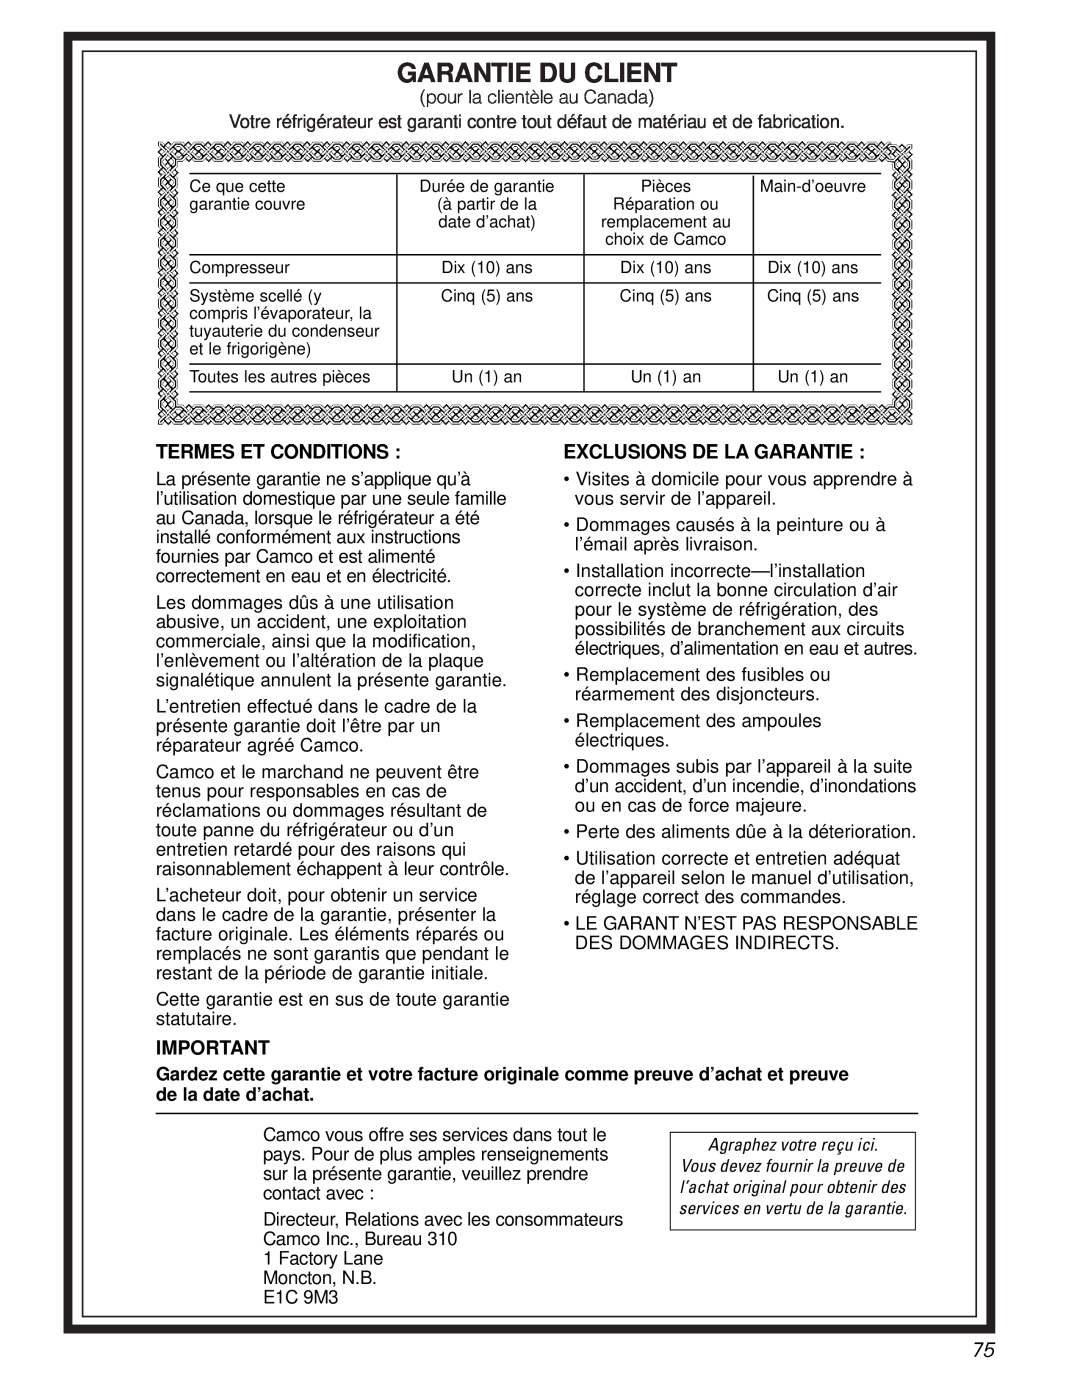 GE 200D2600P010 installation instructions Garantie Du Client, Termes Et Conditions, Exclusions De La Garantie 